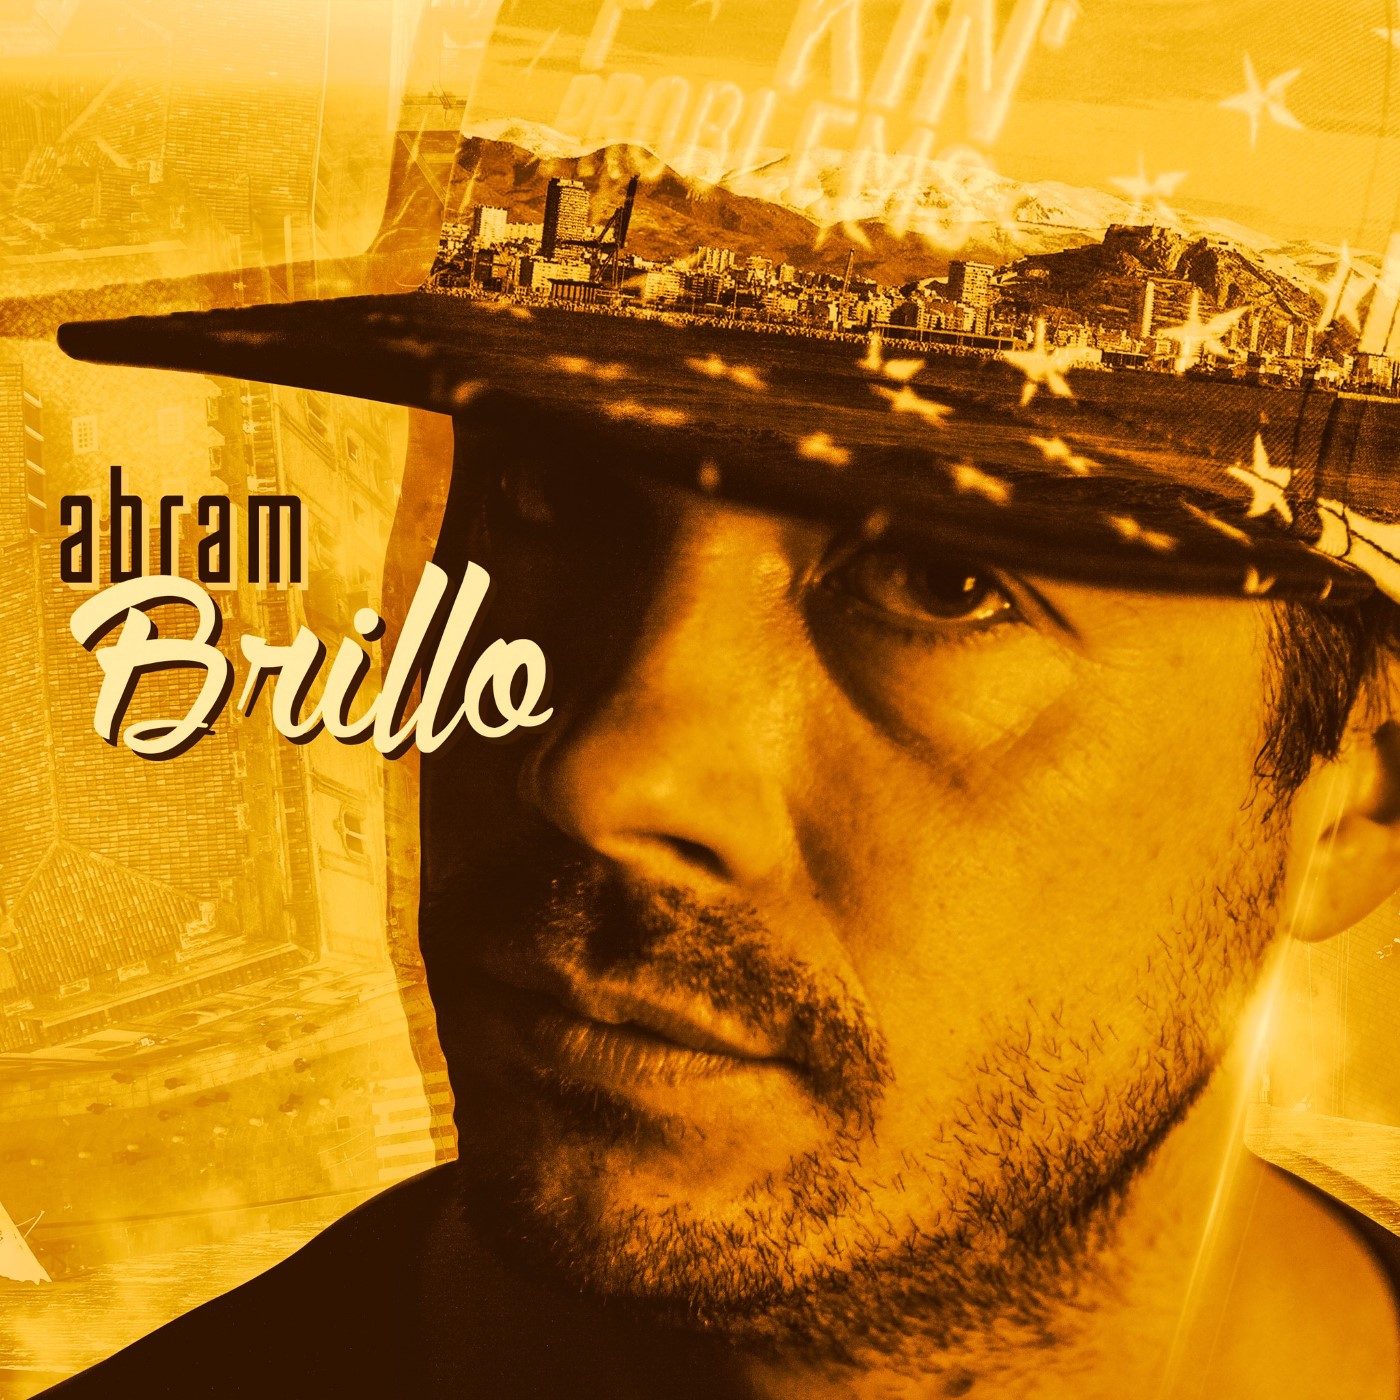 Abram - Brillo (Ficha con tracklist)